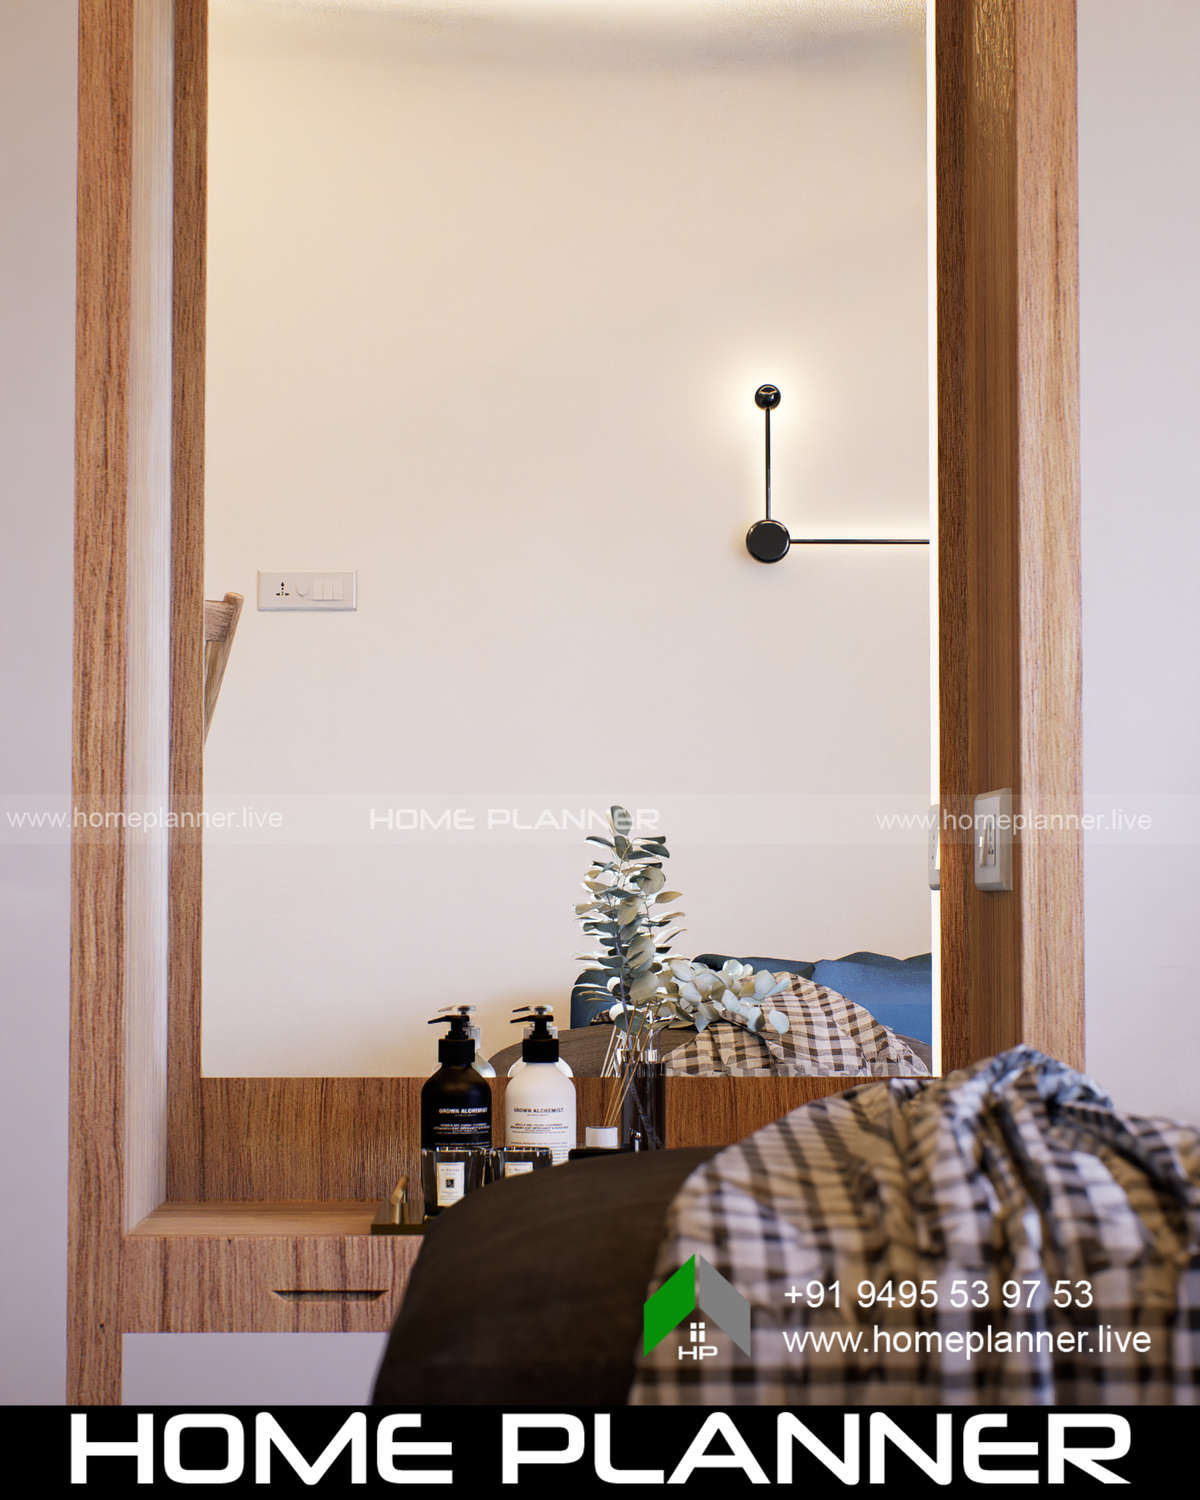 Furniture, Storage, Bedroom, Door, Wall Designs by Civil Engineer HOME PLANNER, Kollam | Kolo